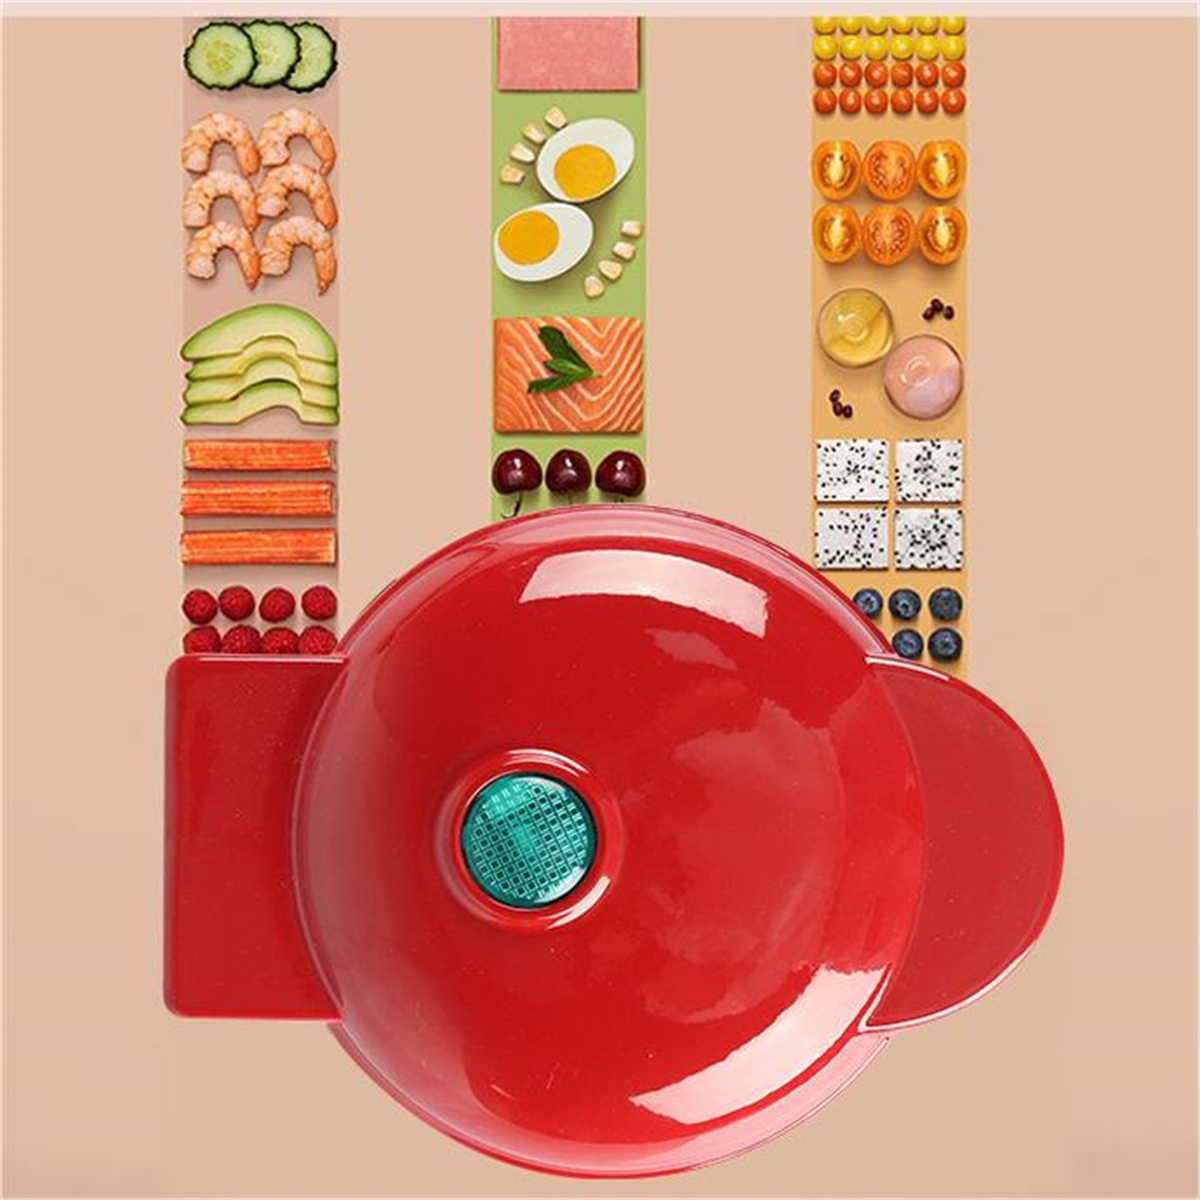 Multifunktional Frühstücksmaschine Elektrisch Keksdose Mini Waffeleisen Rot SYNTEK für Waffeleisen Waffelmaschine Zuhause